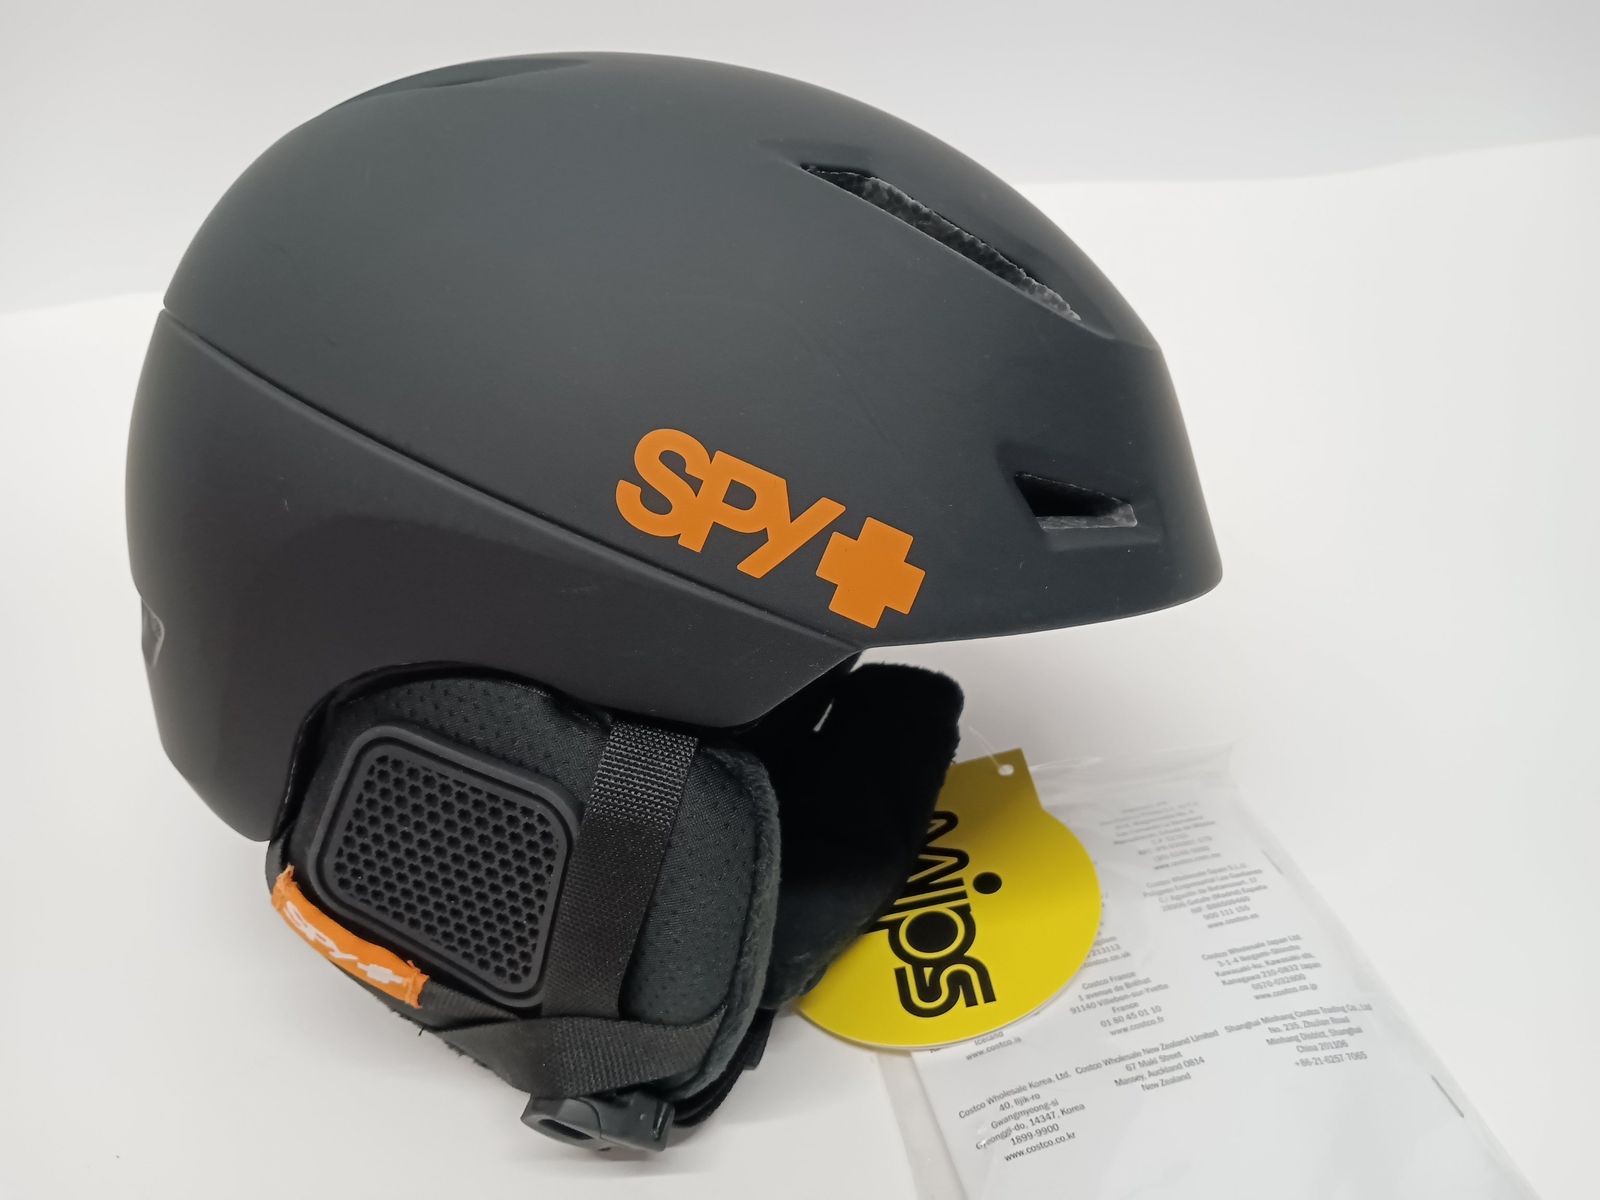 検討させていただきますspyスノーヘルメット【サイズ】S 51-55cm 